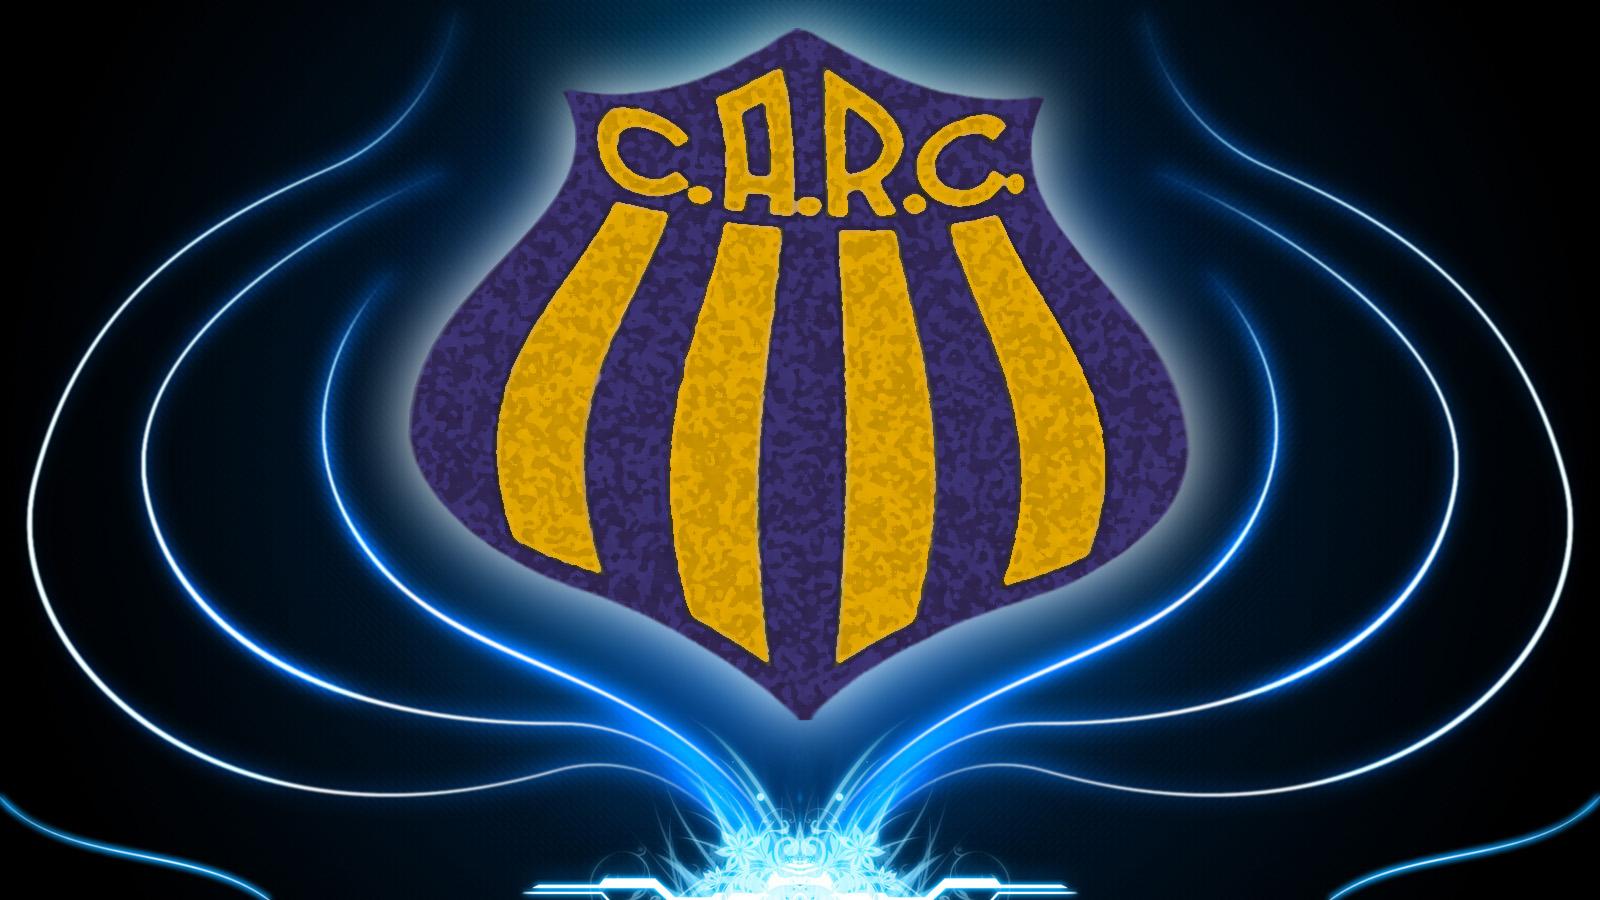 باشگاه فوتبال روساریو سنترال (Club Atlético Rosario Central)